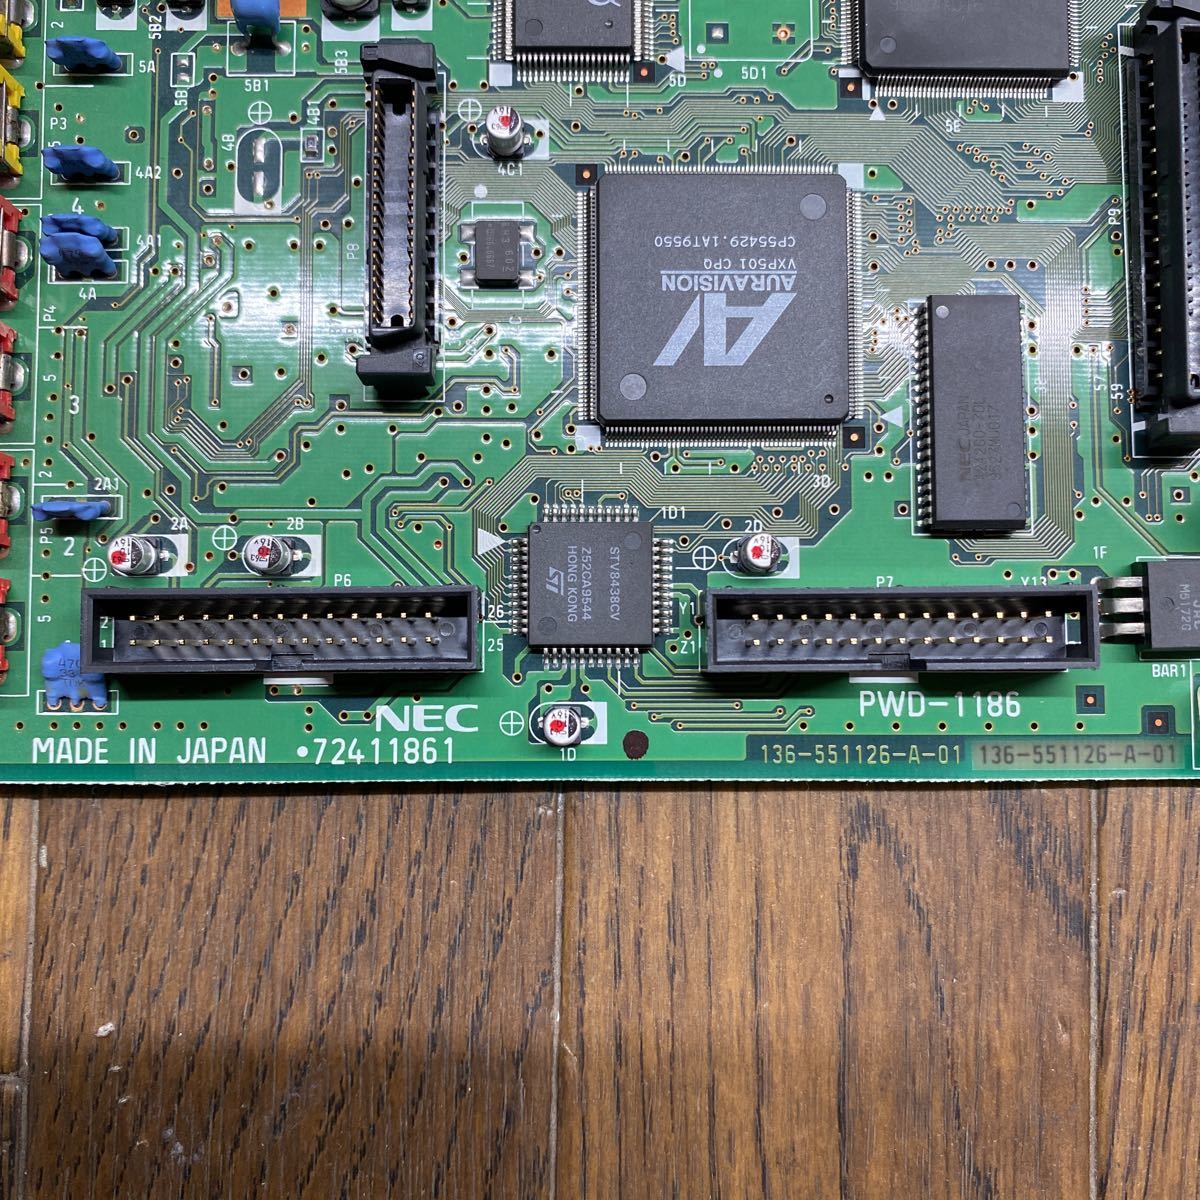 GGA26-4 激安 Cバス用TVチューナーボード NEC PWD-1186 G8TYX A1 PC-9821対応 動作未確認 ジャンク 同梱可能_画像3